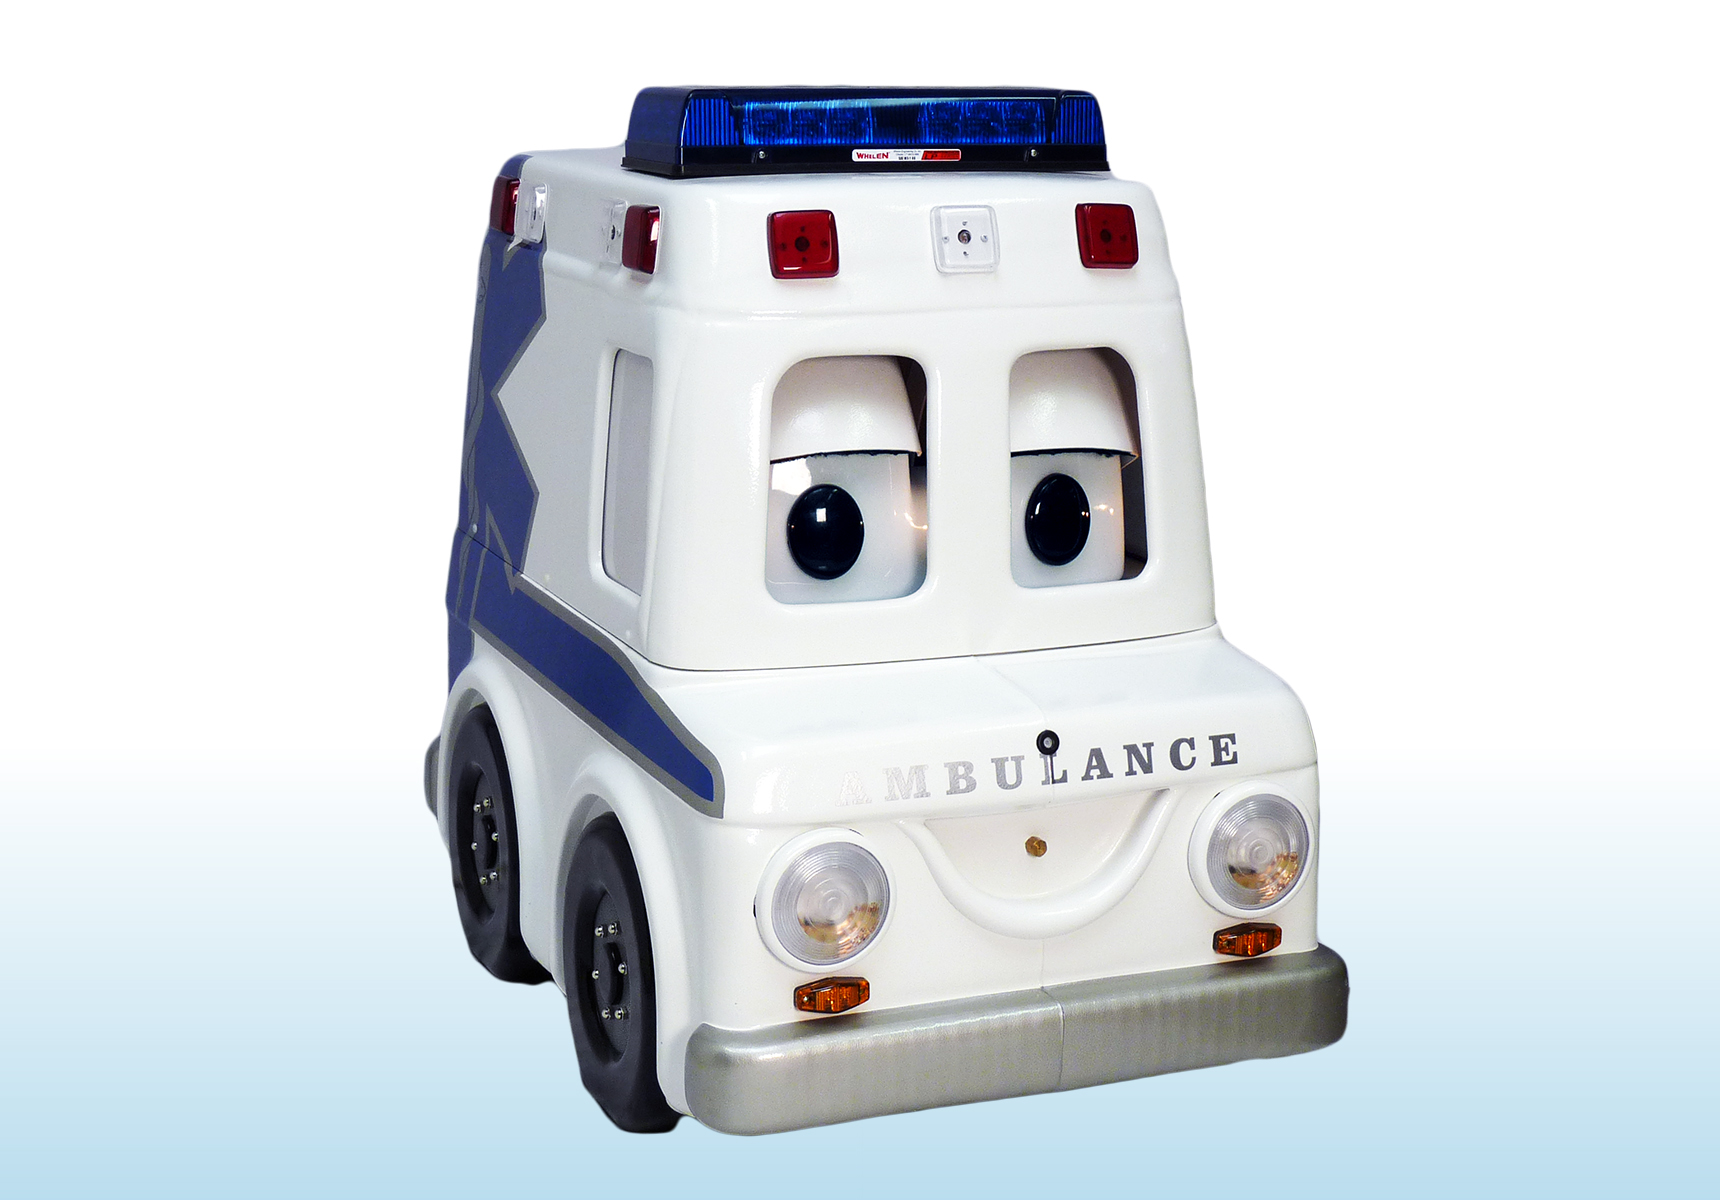 The ambulance